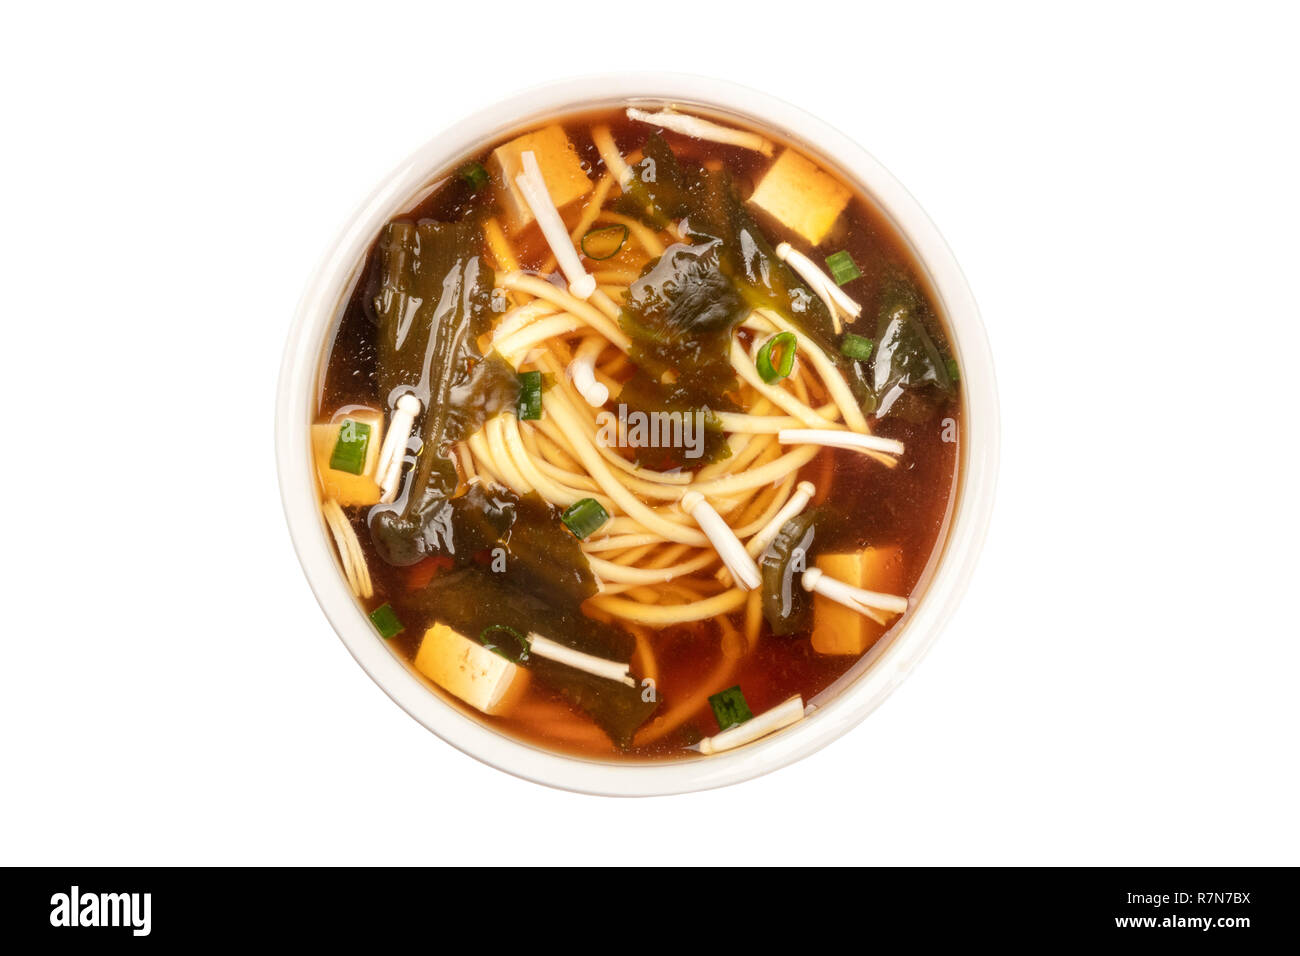 Une photo d'un bol de soupe miso avec le tofu, les oignons verts, les nouilles, les champignons Enoki et wakame, tourné à partir du haut, isolé sur un fond blanc avec une cl Banque D'Images